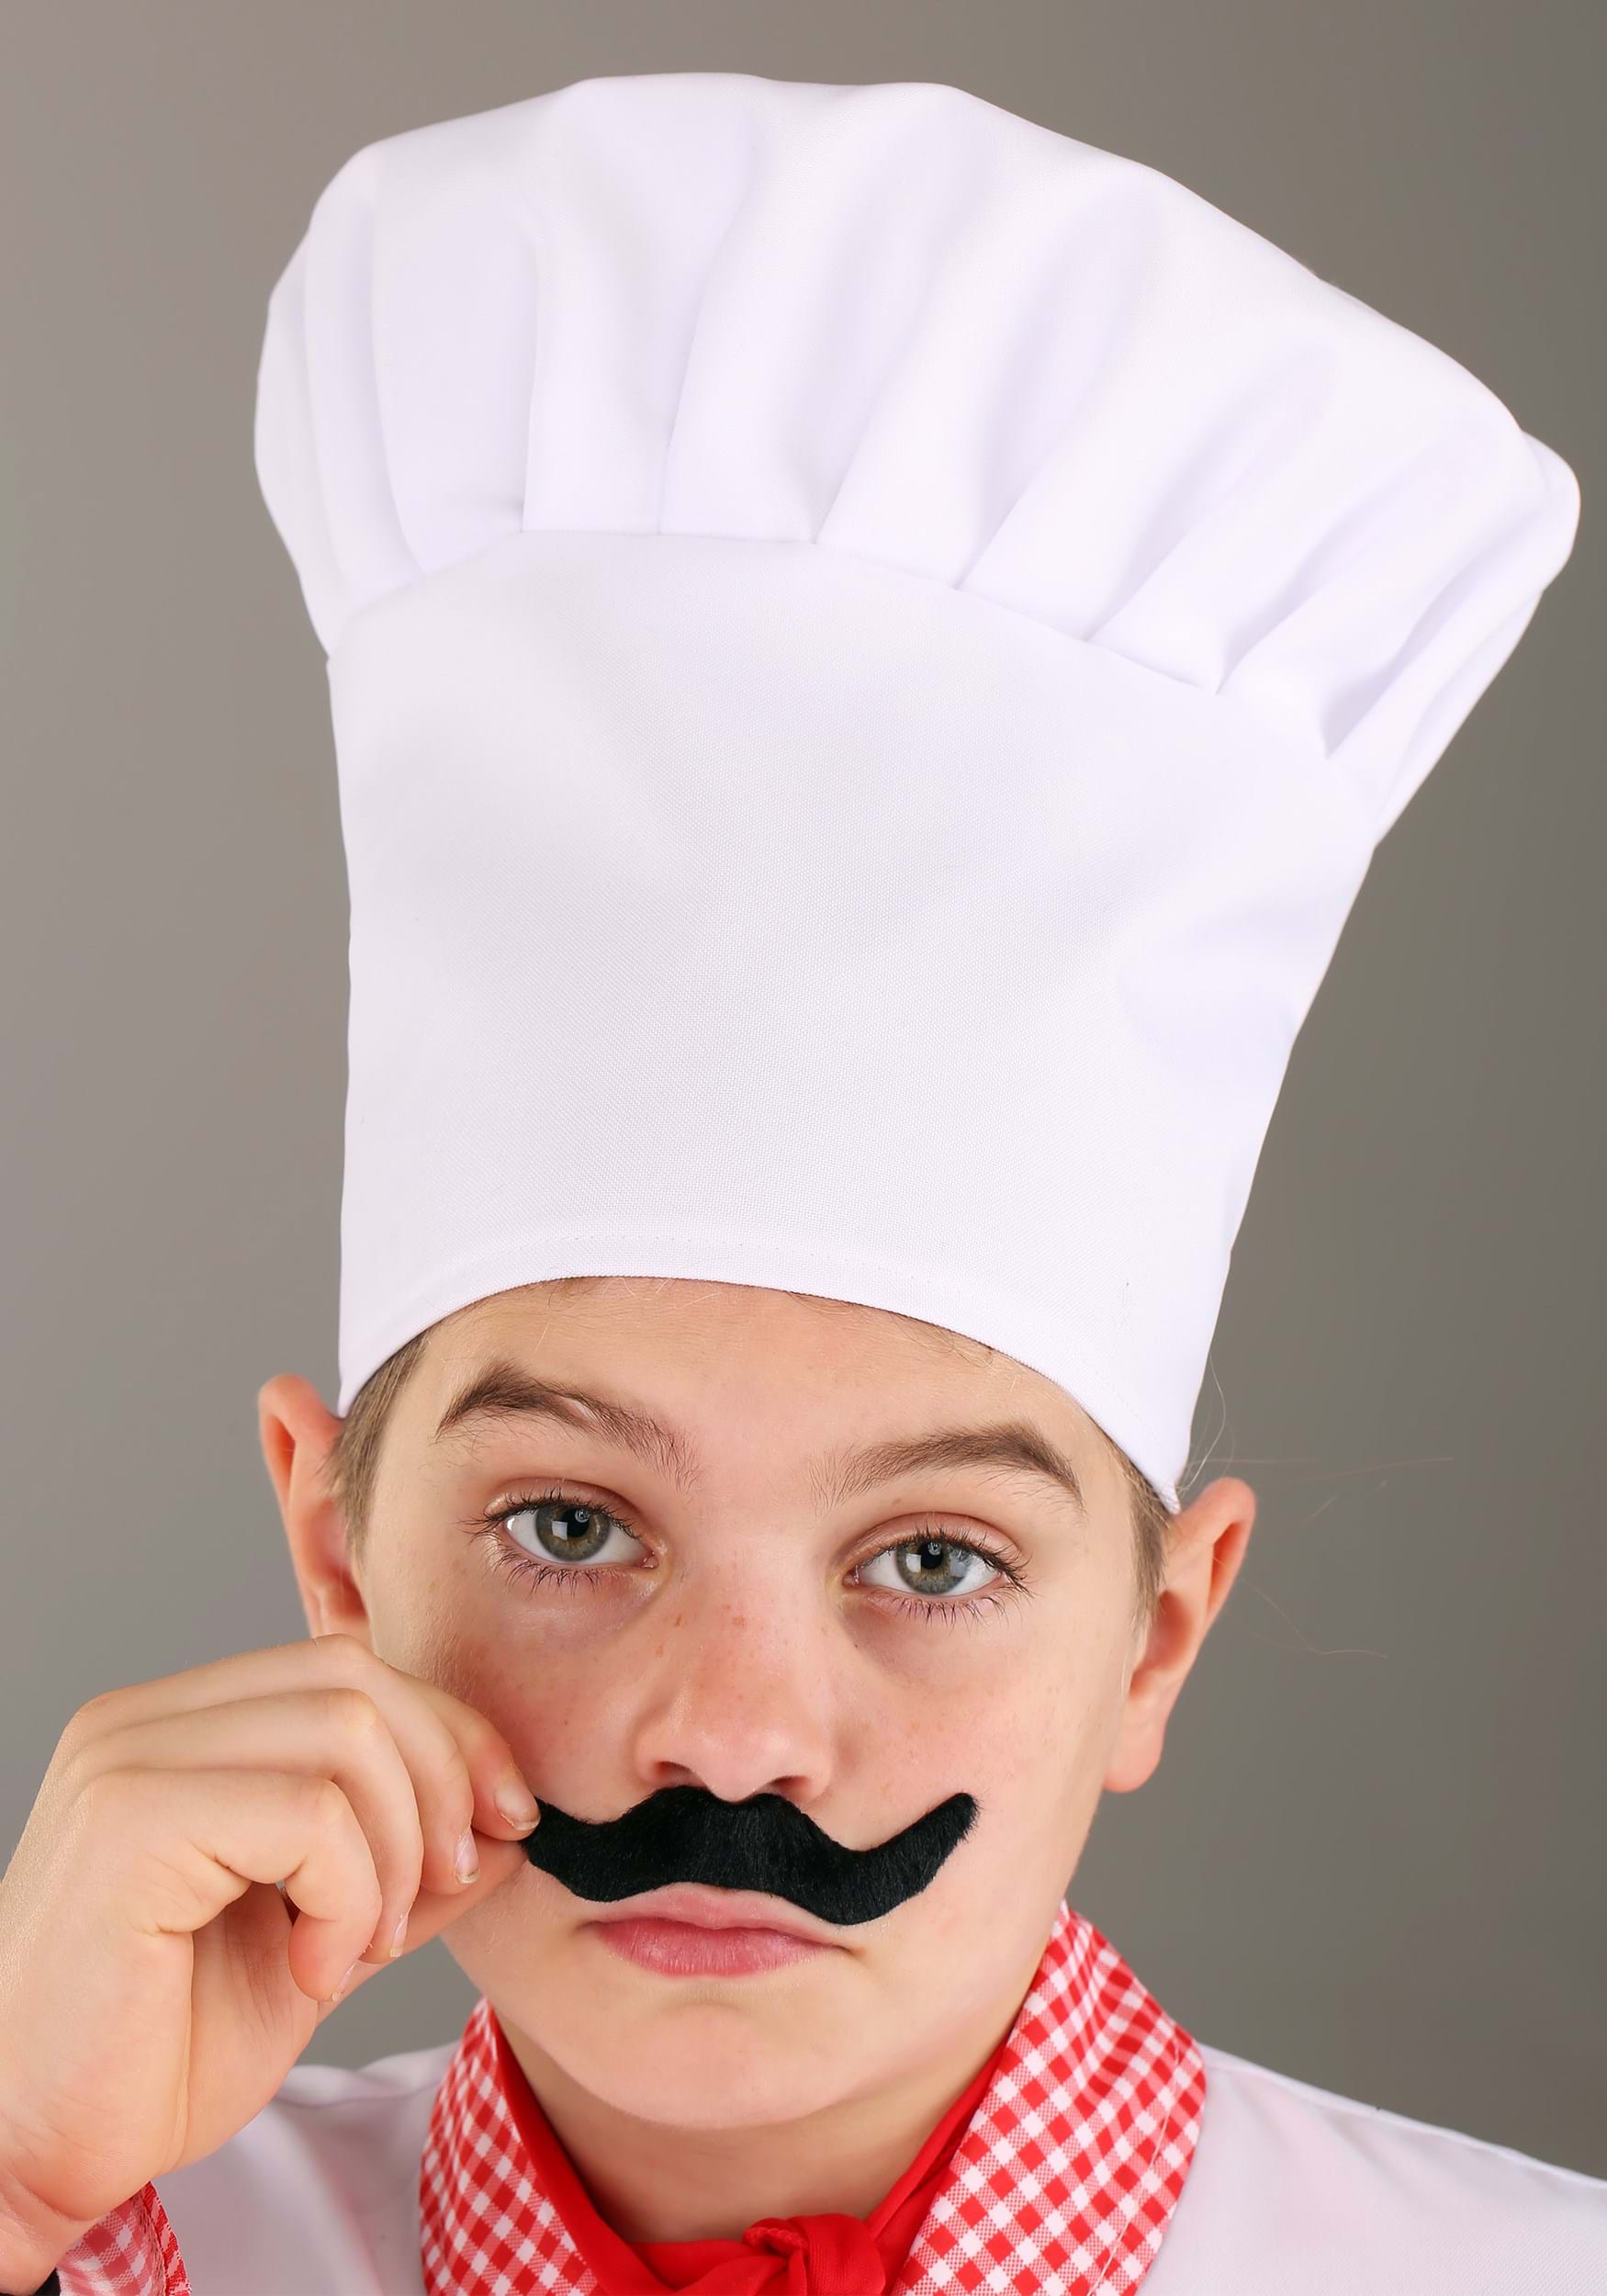 Chef Kid's Costume